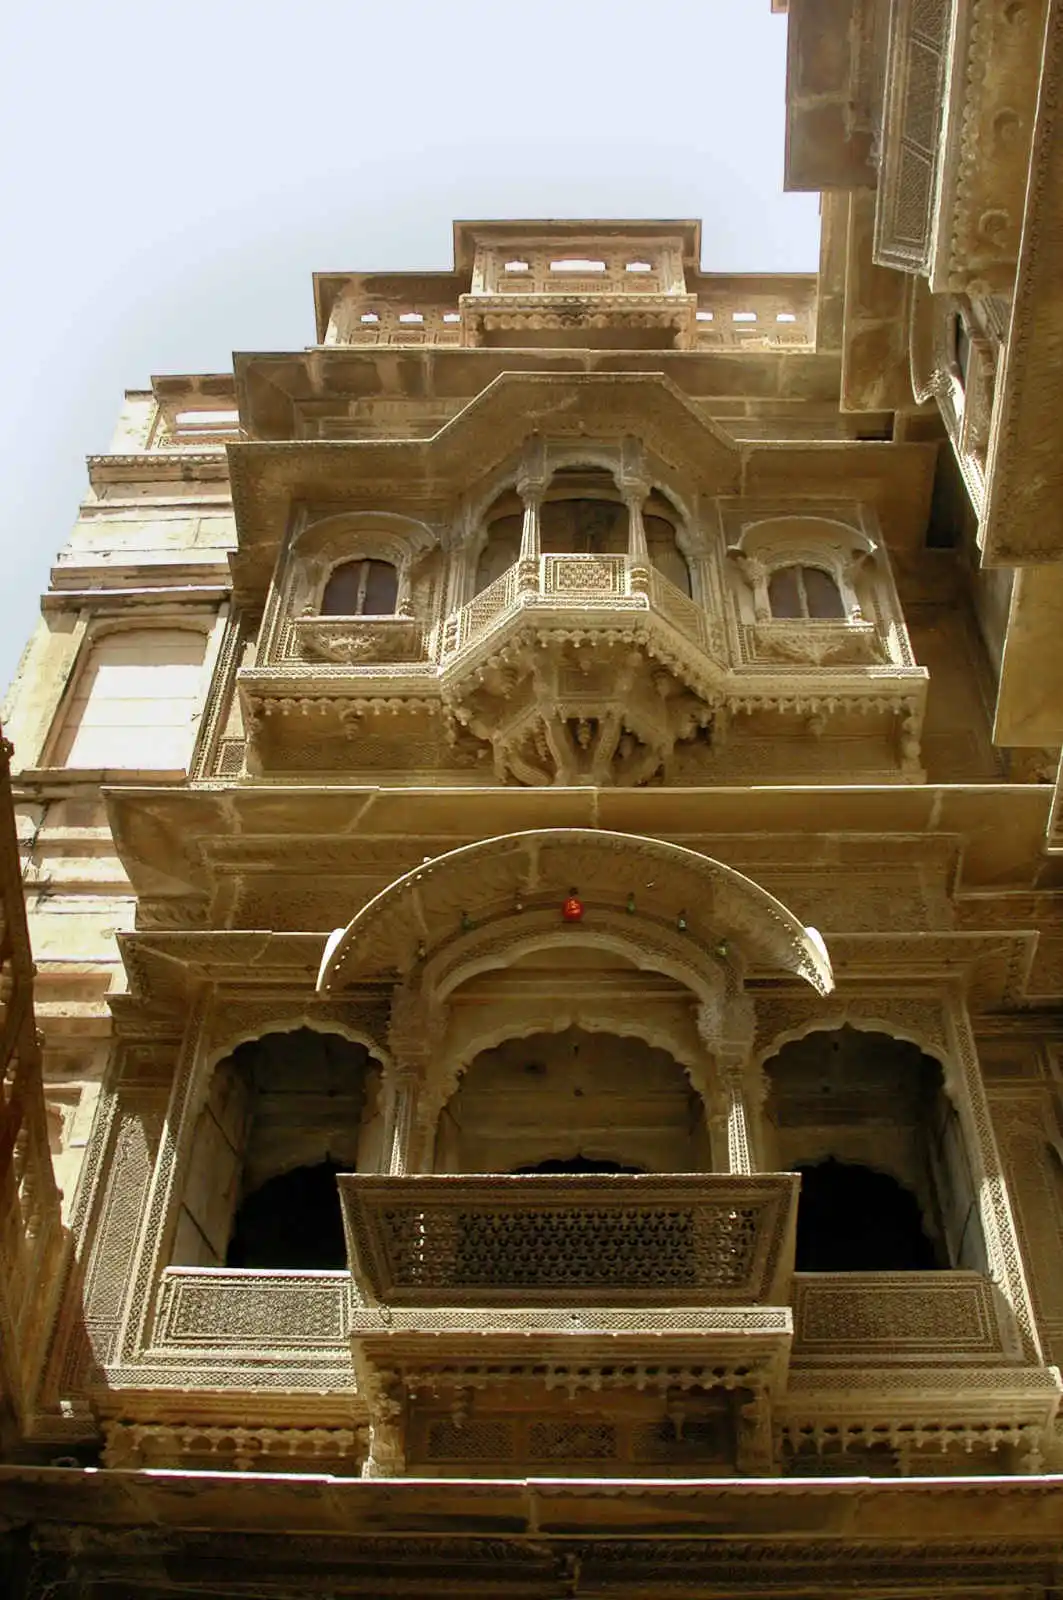 Inde - Inde du Nord et Rajasthan - Circuit Palais du Rajasthan en privé